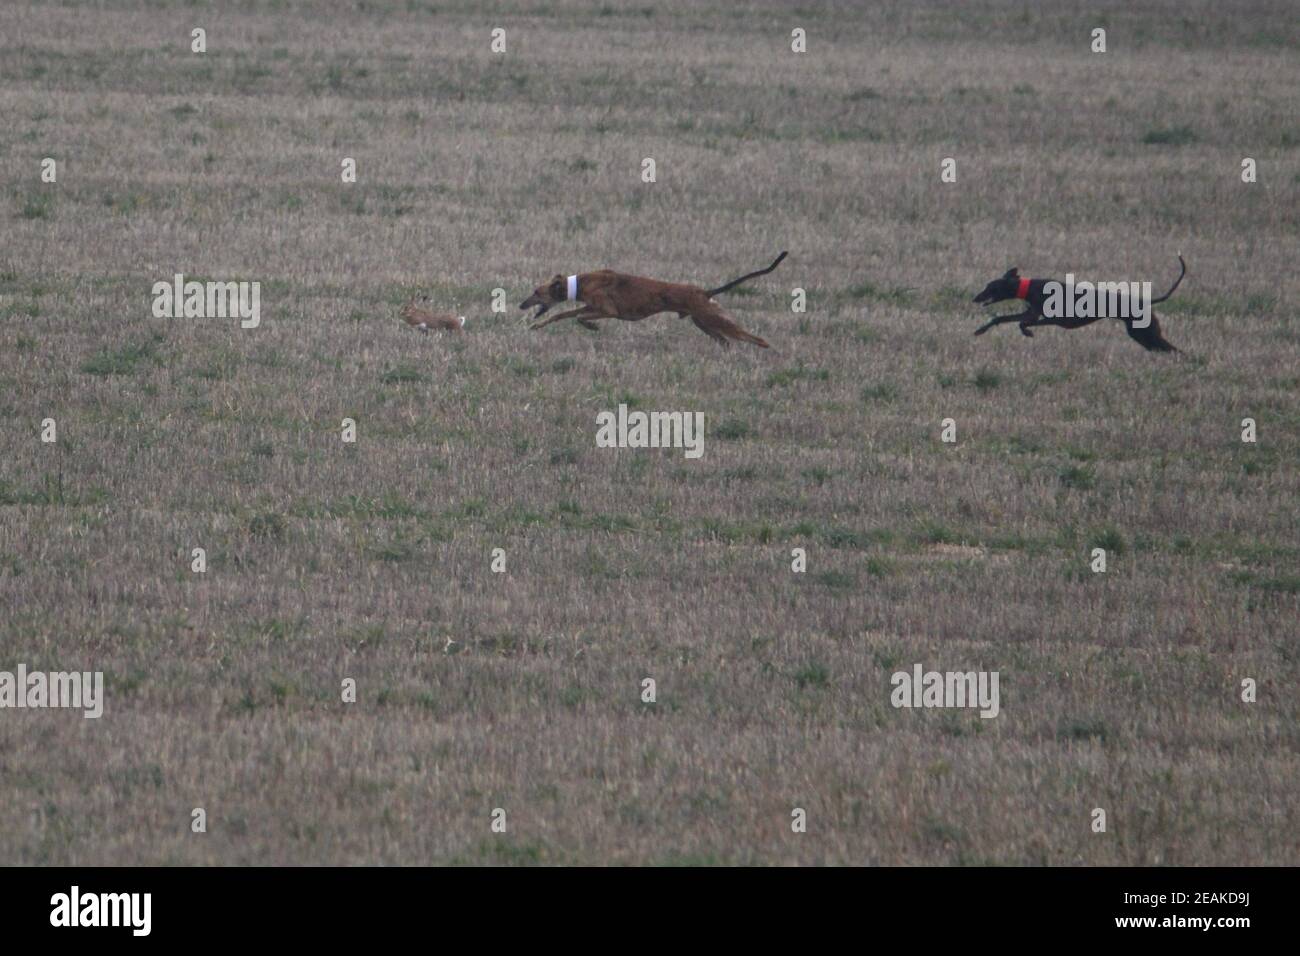 Foto sbalorditive di cani spaniards a caccia della lepre in aperto campo Foto Stock